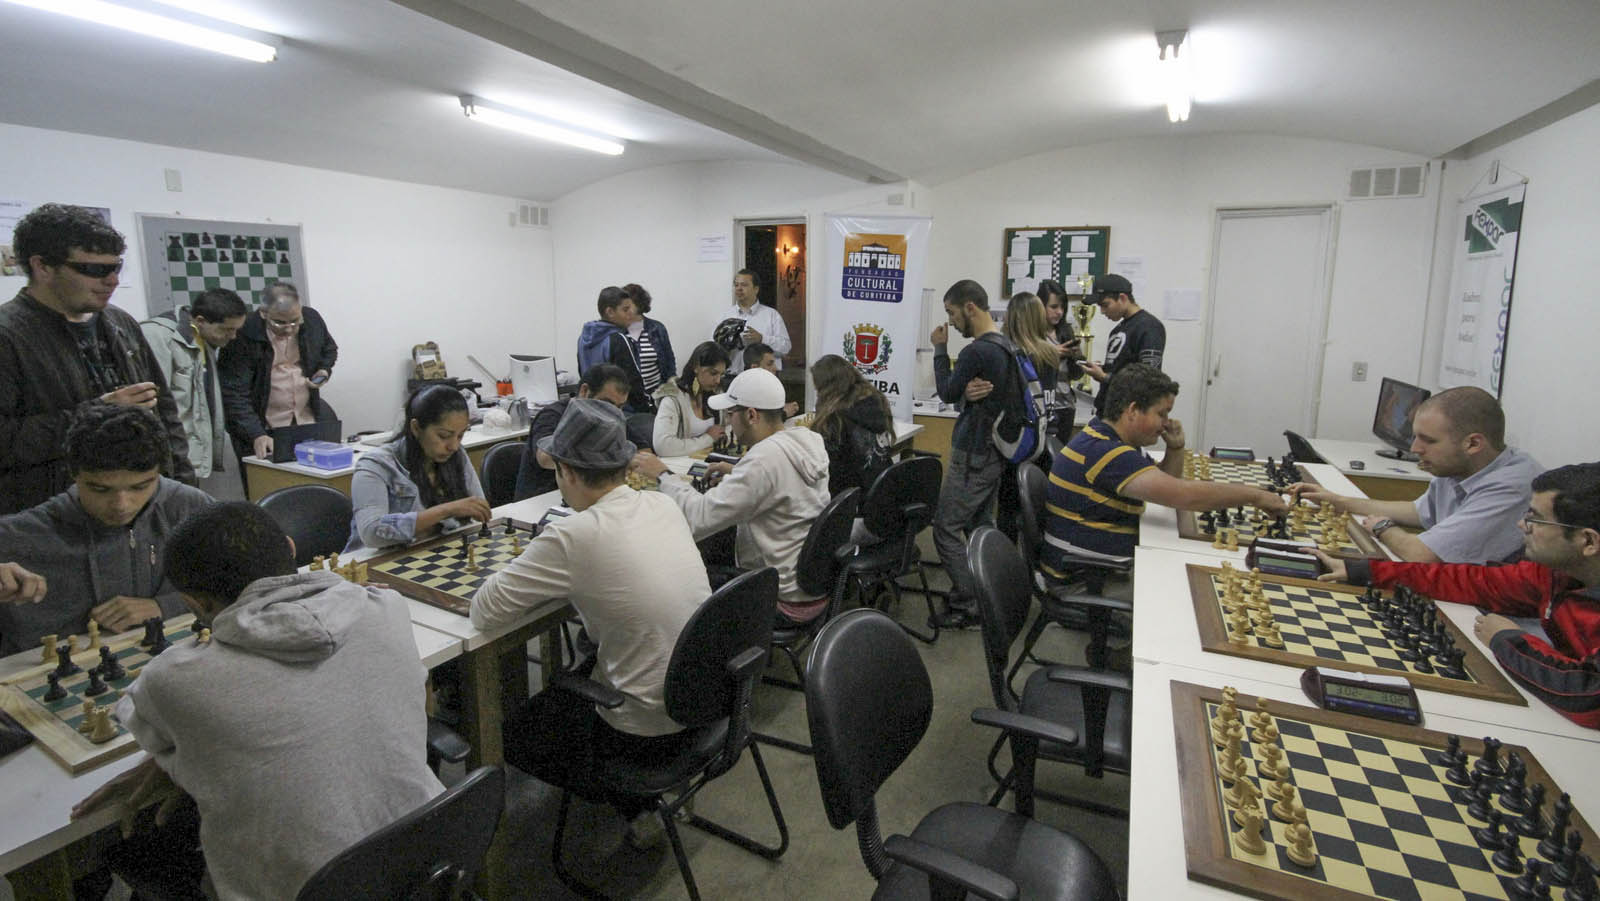 Clube de Xadrez na Galeria Júlio Moreira, em Curitiba, retoma atividades  presenciais